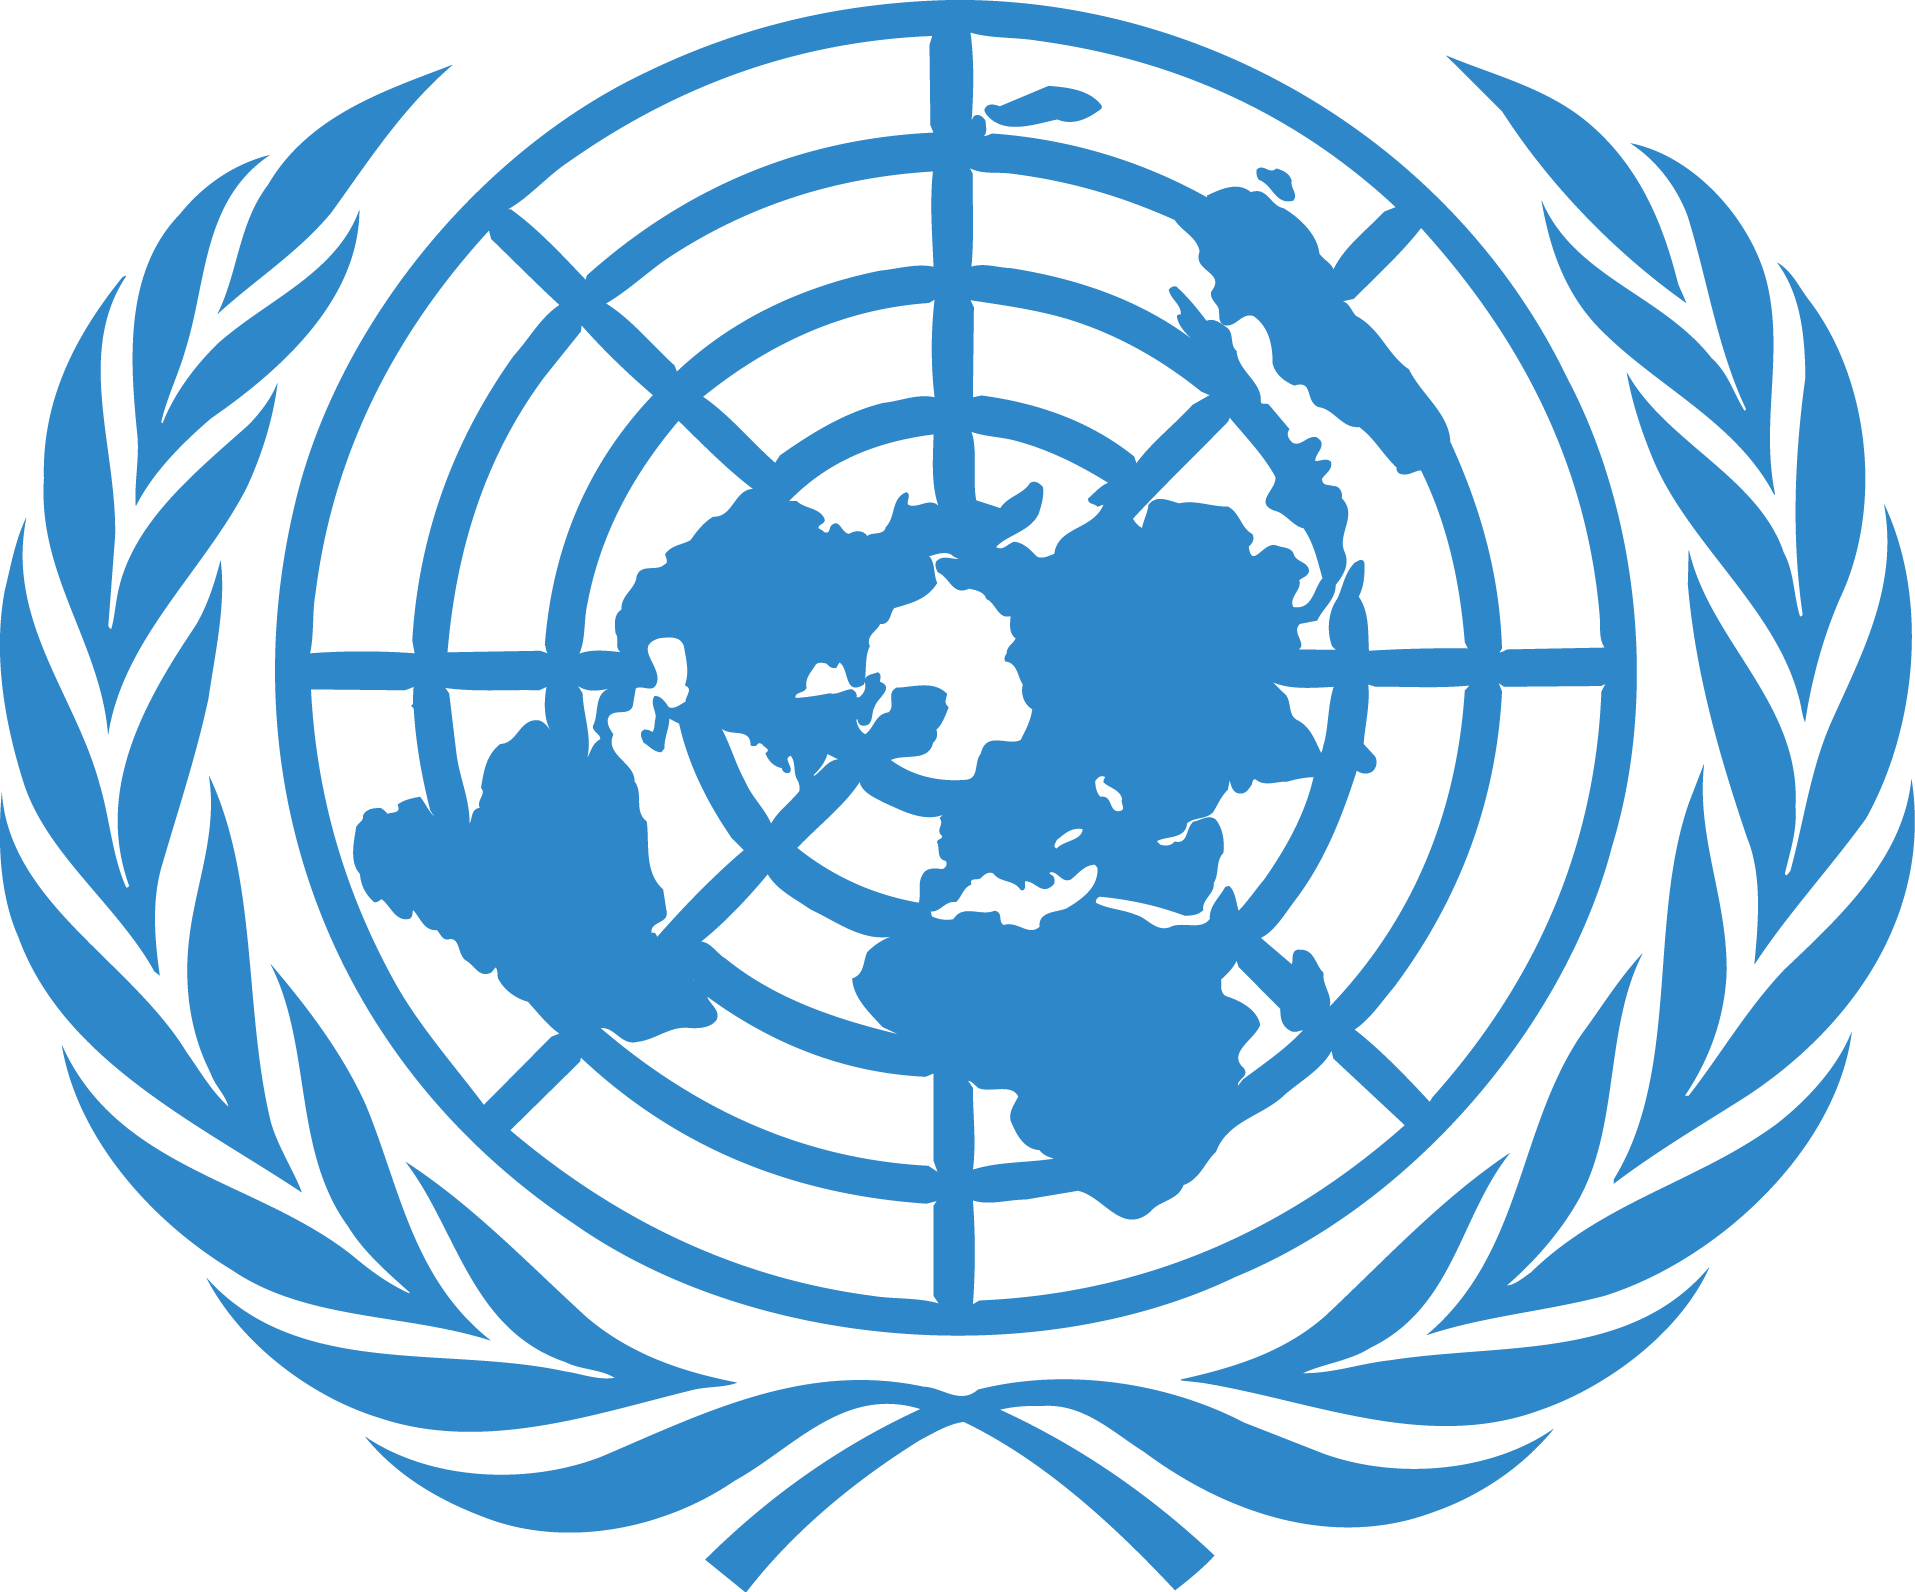 United Nations Emblem Logo PNG Transparent Image